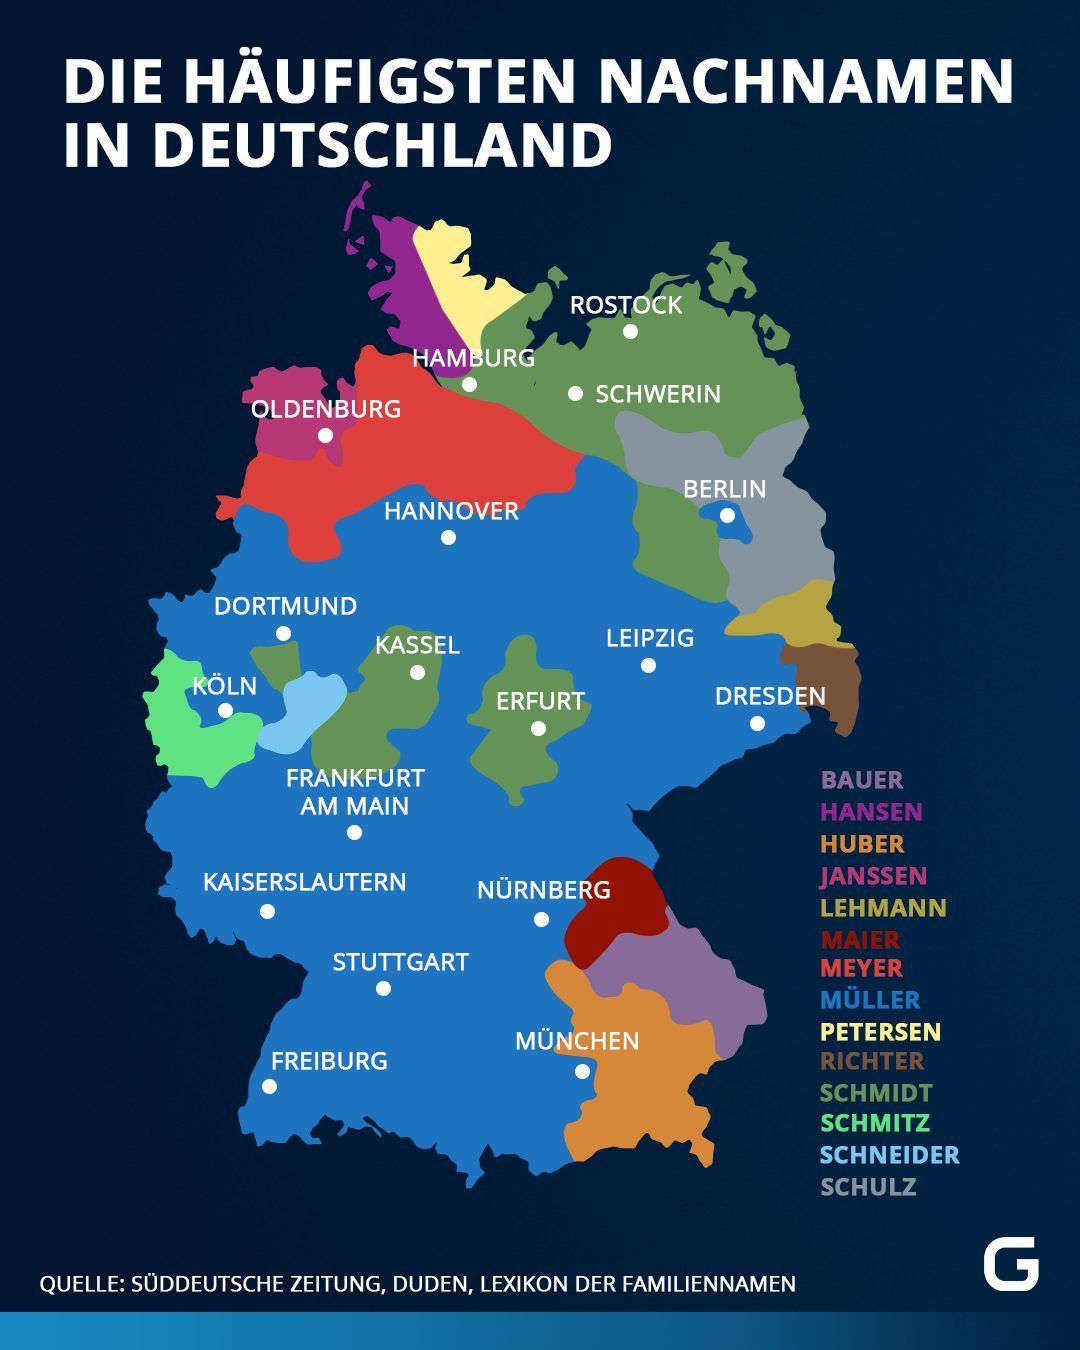 Die häufigsten Nachnamen in Deutschland unterteilt nach Regionen.